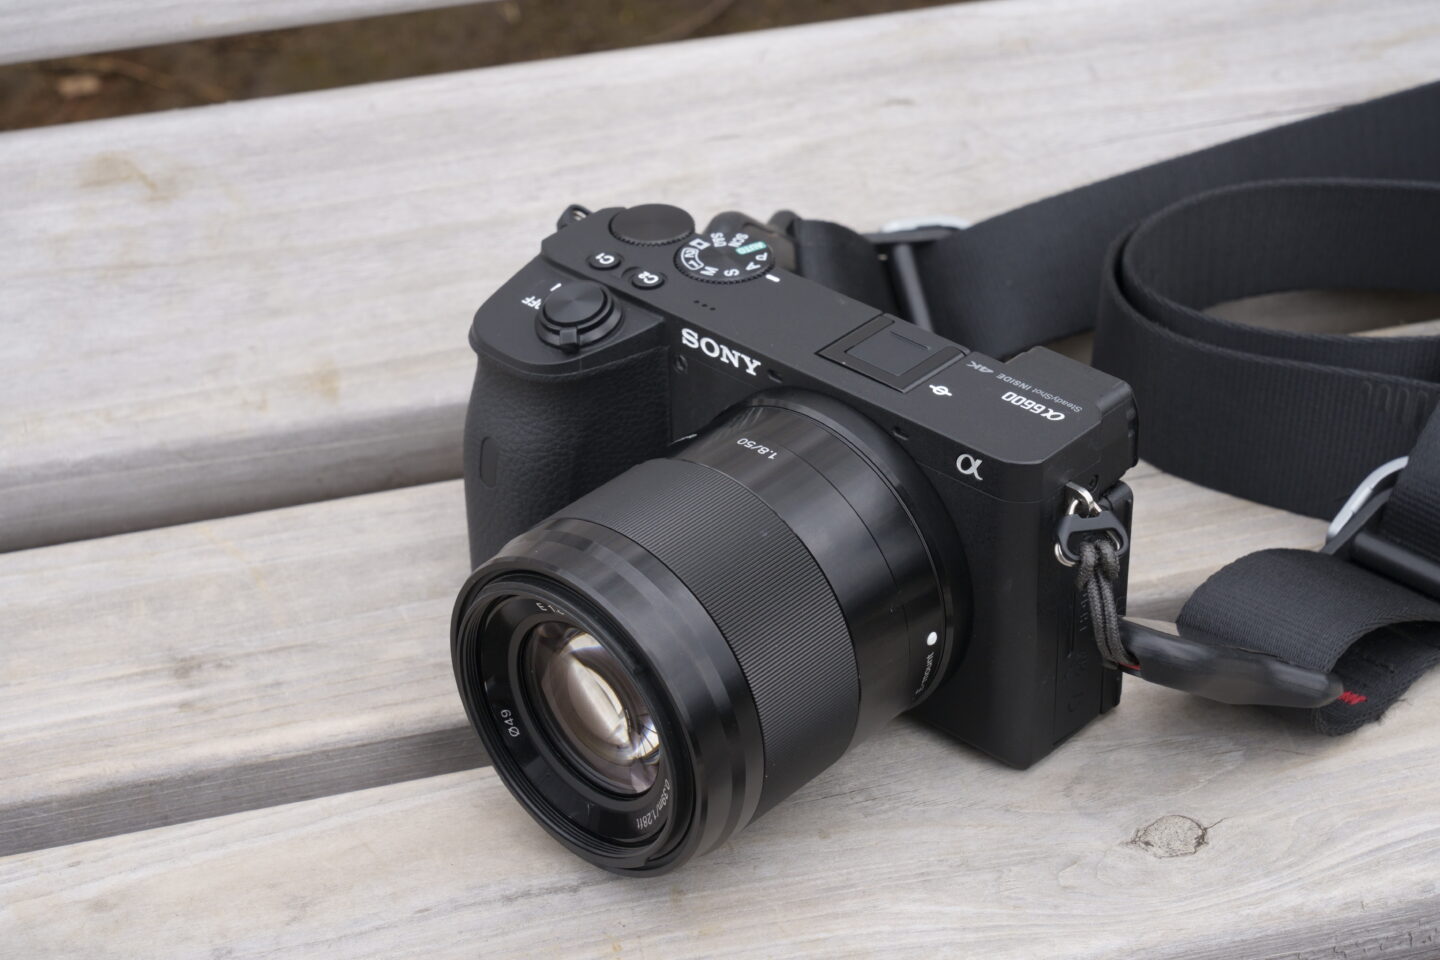 ソニー   標準単焦点レンズ   APS-C   E 35mm F1.8 OSS   デジタル一眼カメラαEマウント用 純正レンズ   SE - 1